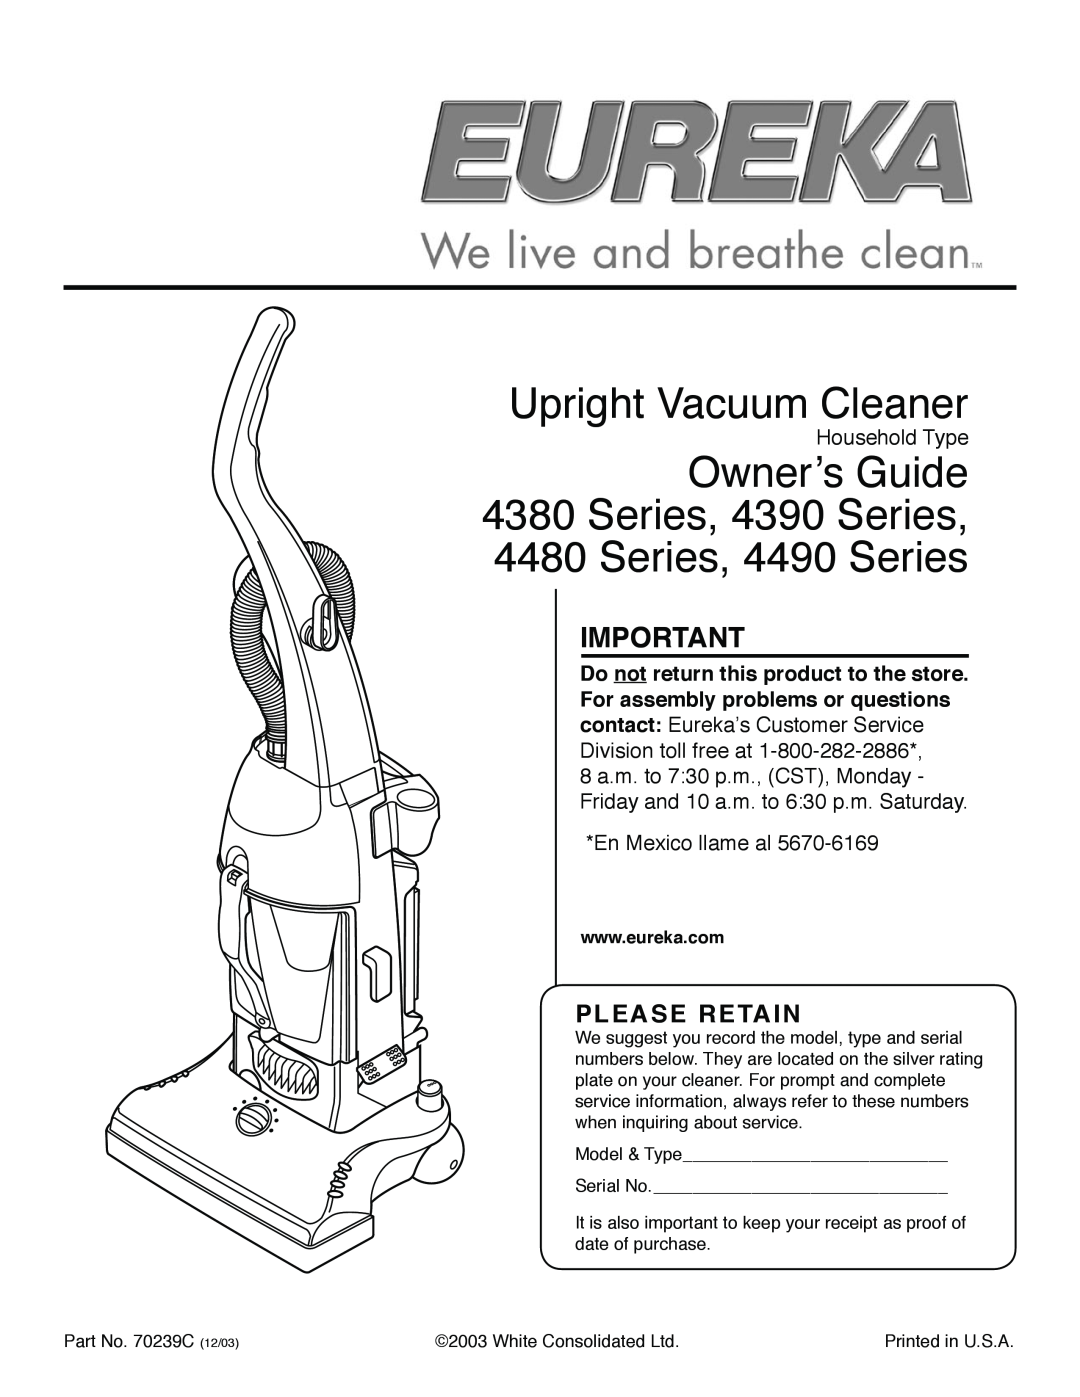 Eureka 4380 Series, 4490 Series, 4480 Series, 4390 Series manual Please Retain, Upright Vacuum Cleaner 